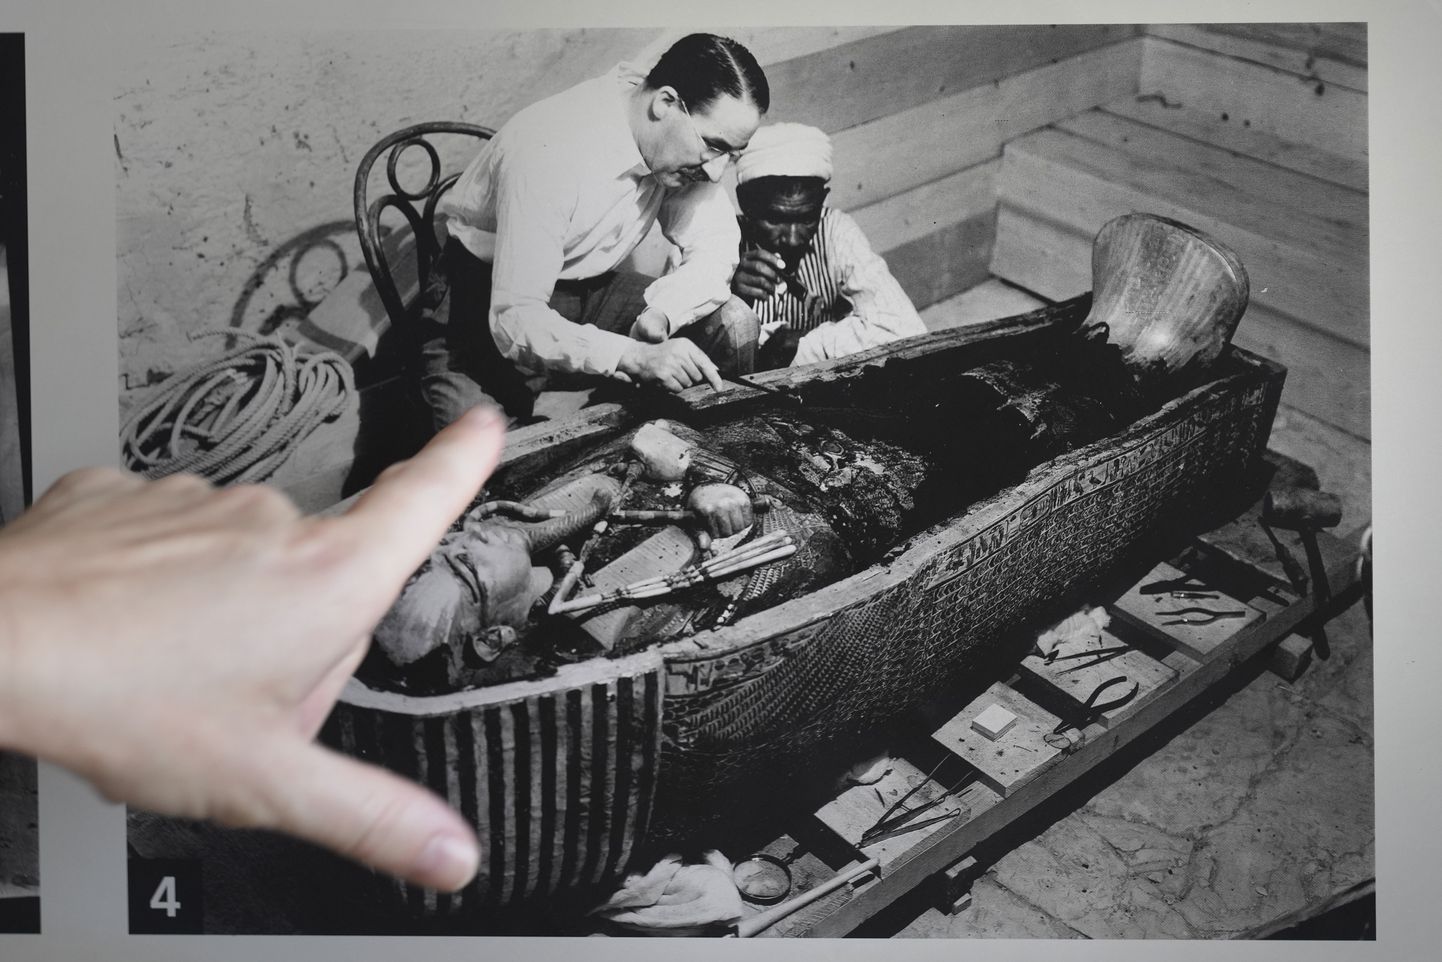 4. novembril 2022 möödub 100 aastat, kui Briti arheolog Howard Cater leidis Egiptuses Kuningate orus vaaro Tutanhamoni hauakambri. Fotol Carrter 1922 koos egiptlasest abilisega Tutanhamoni sarkofaagi uurimas